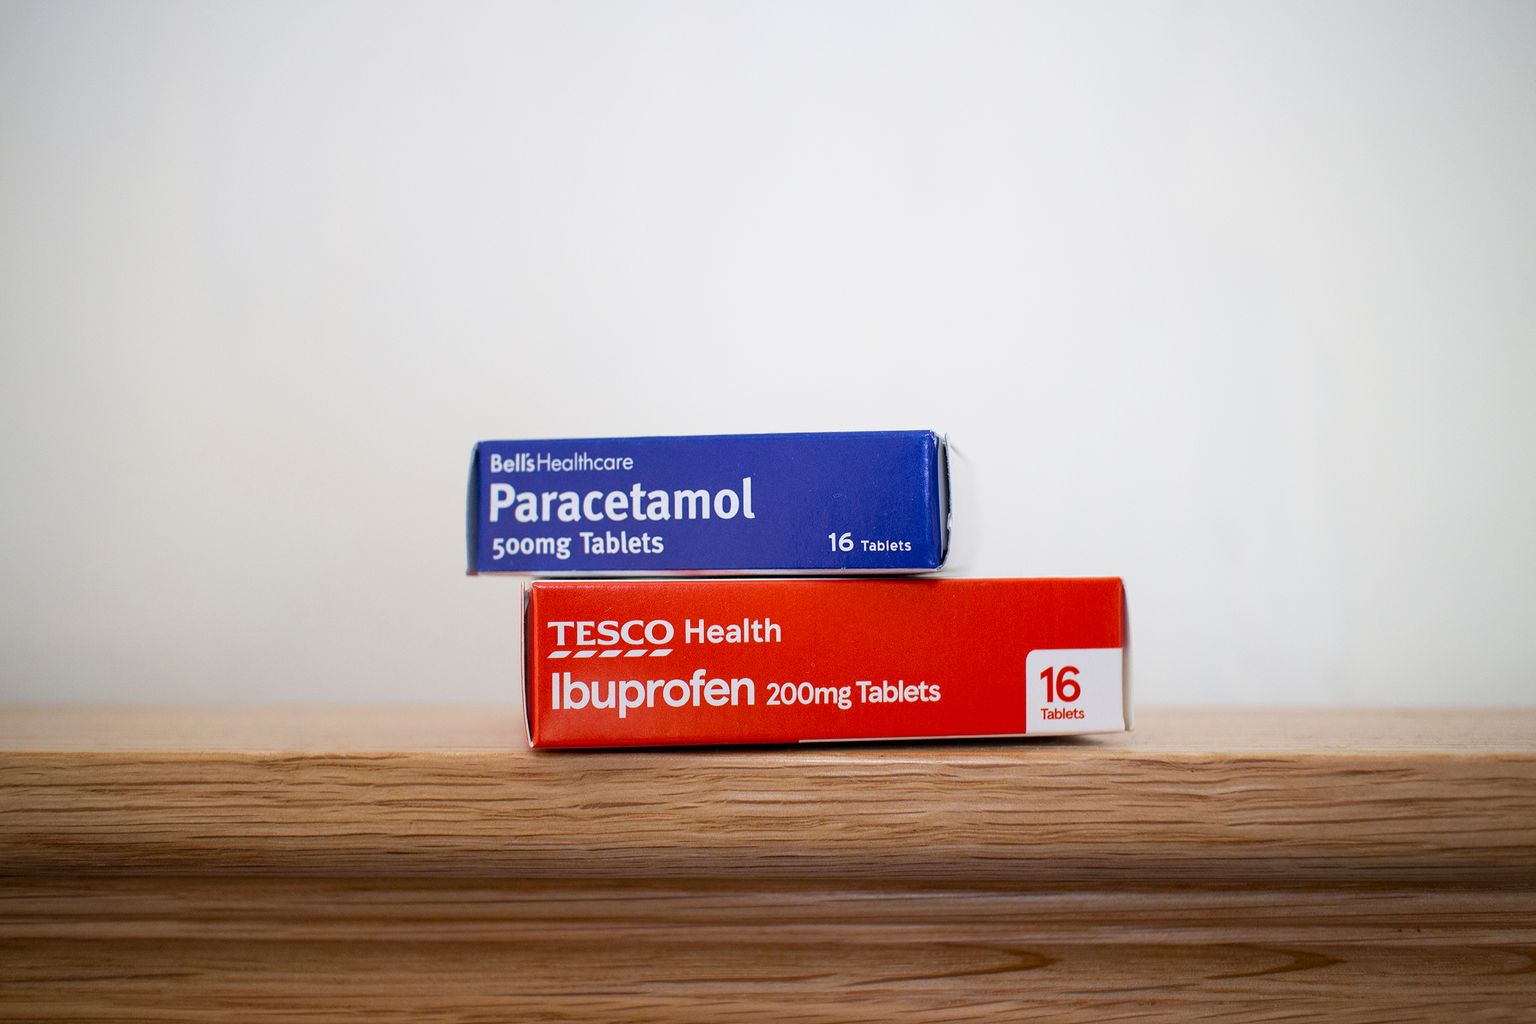 Newport, Gales/Reino Unido - 22/04/2020:Dos cajas de analgésicos de Tesco. Una caja es de paracetamol y la otra de ibuprofeno.